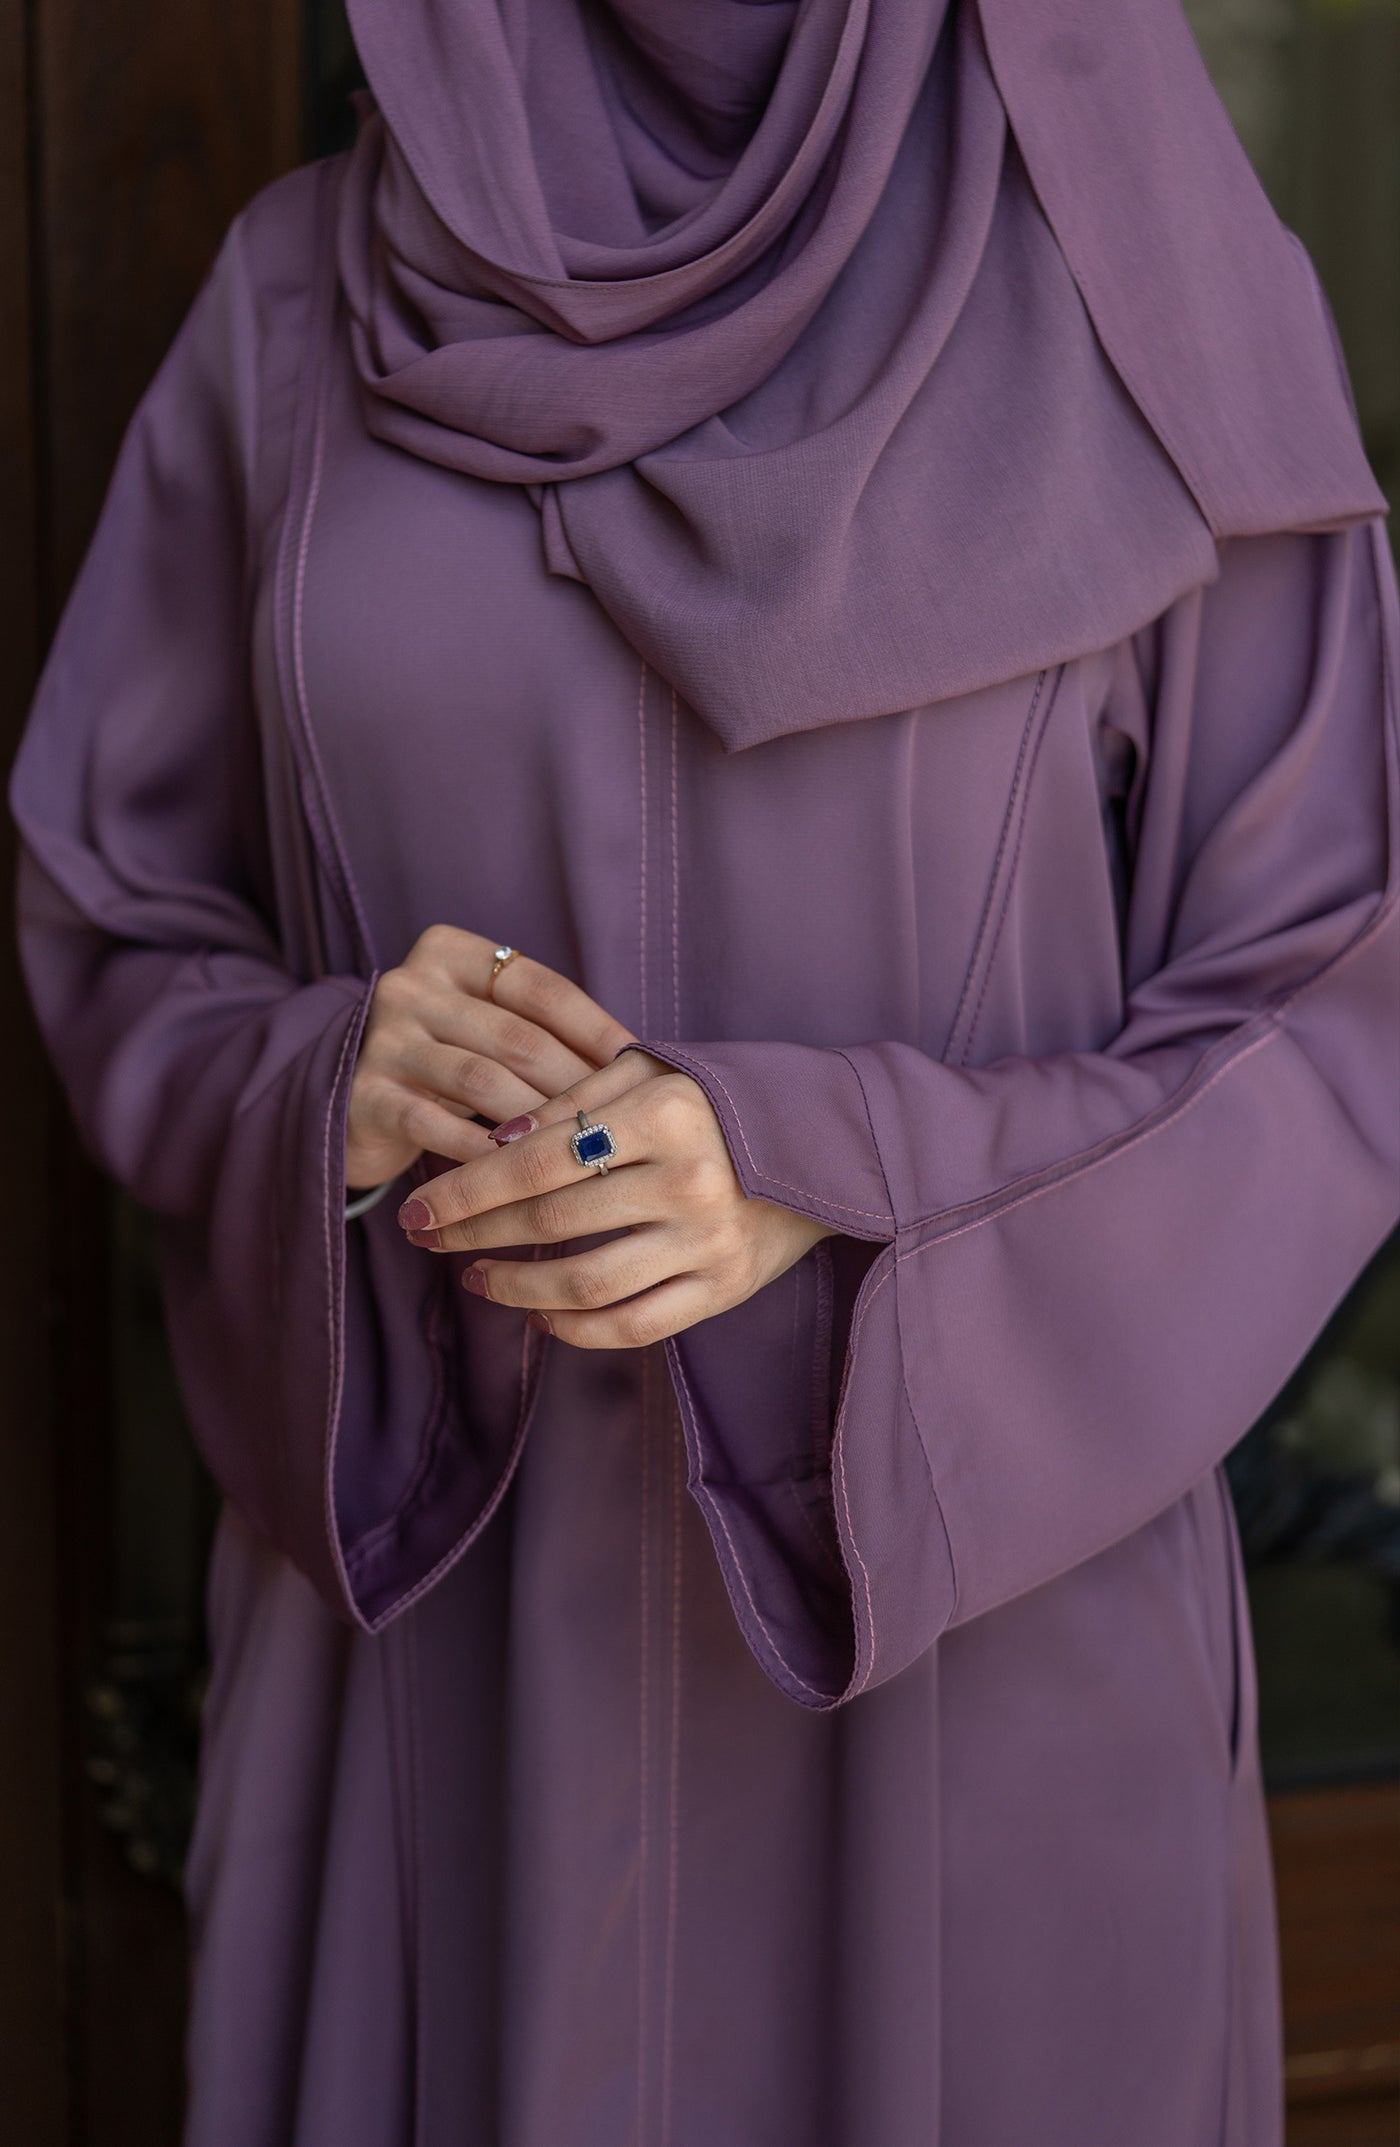 rose color nida abaya with side pockets